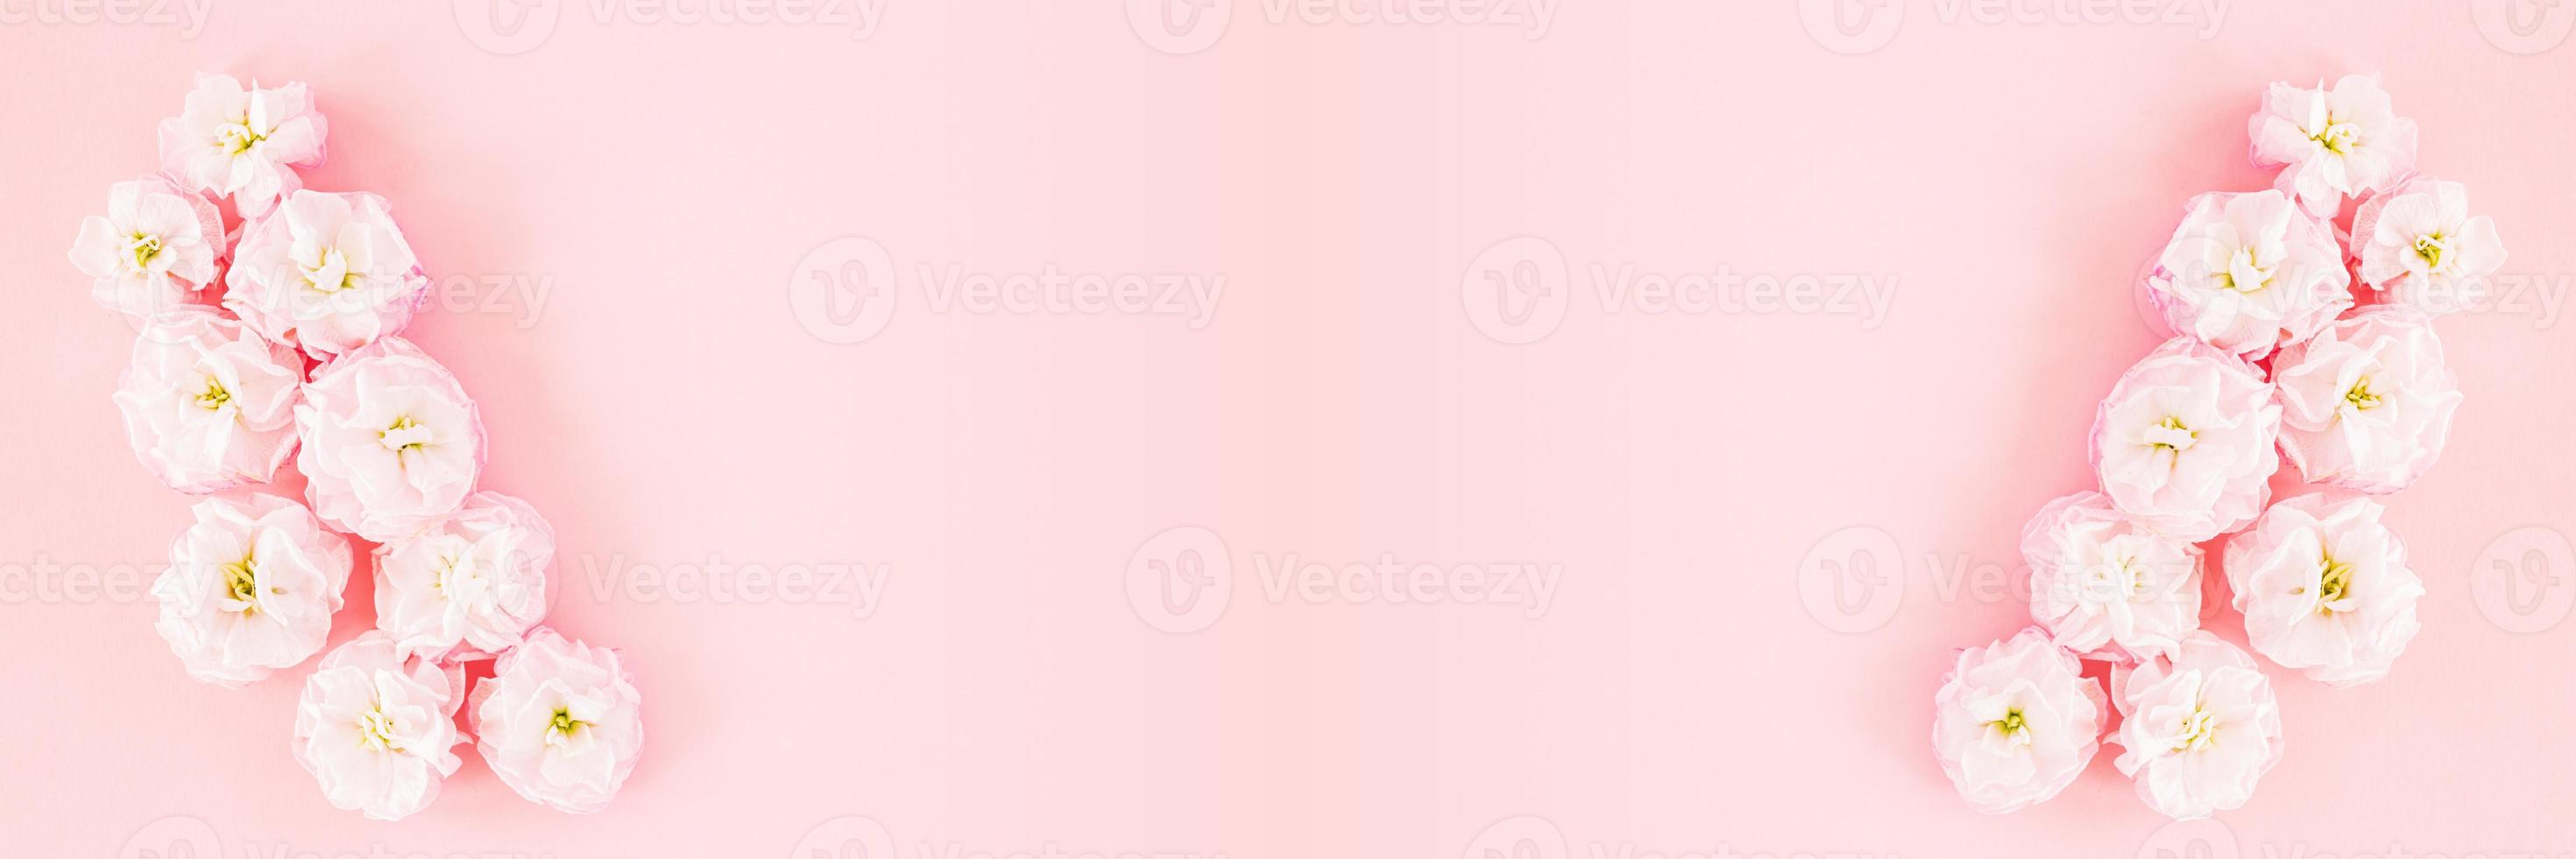 banner oder grußkarte mit kopierraum aus rosa matthiola-blumen auf pastellhintergrund. foto